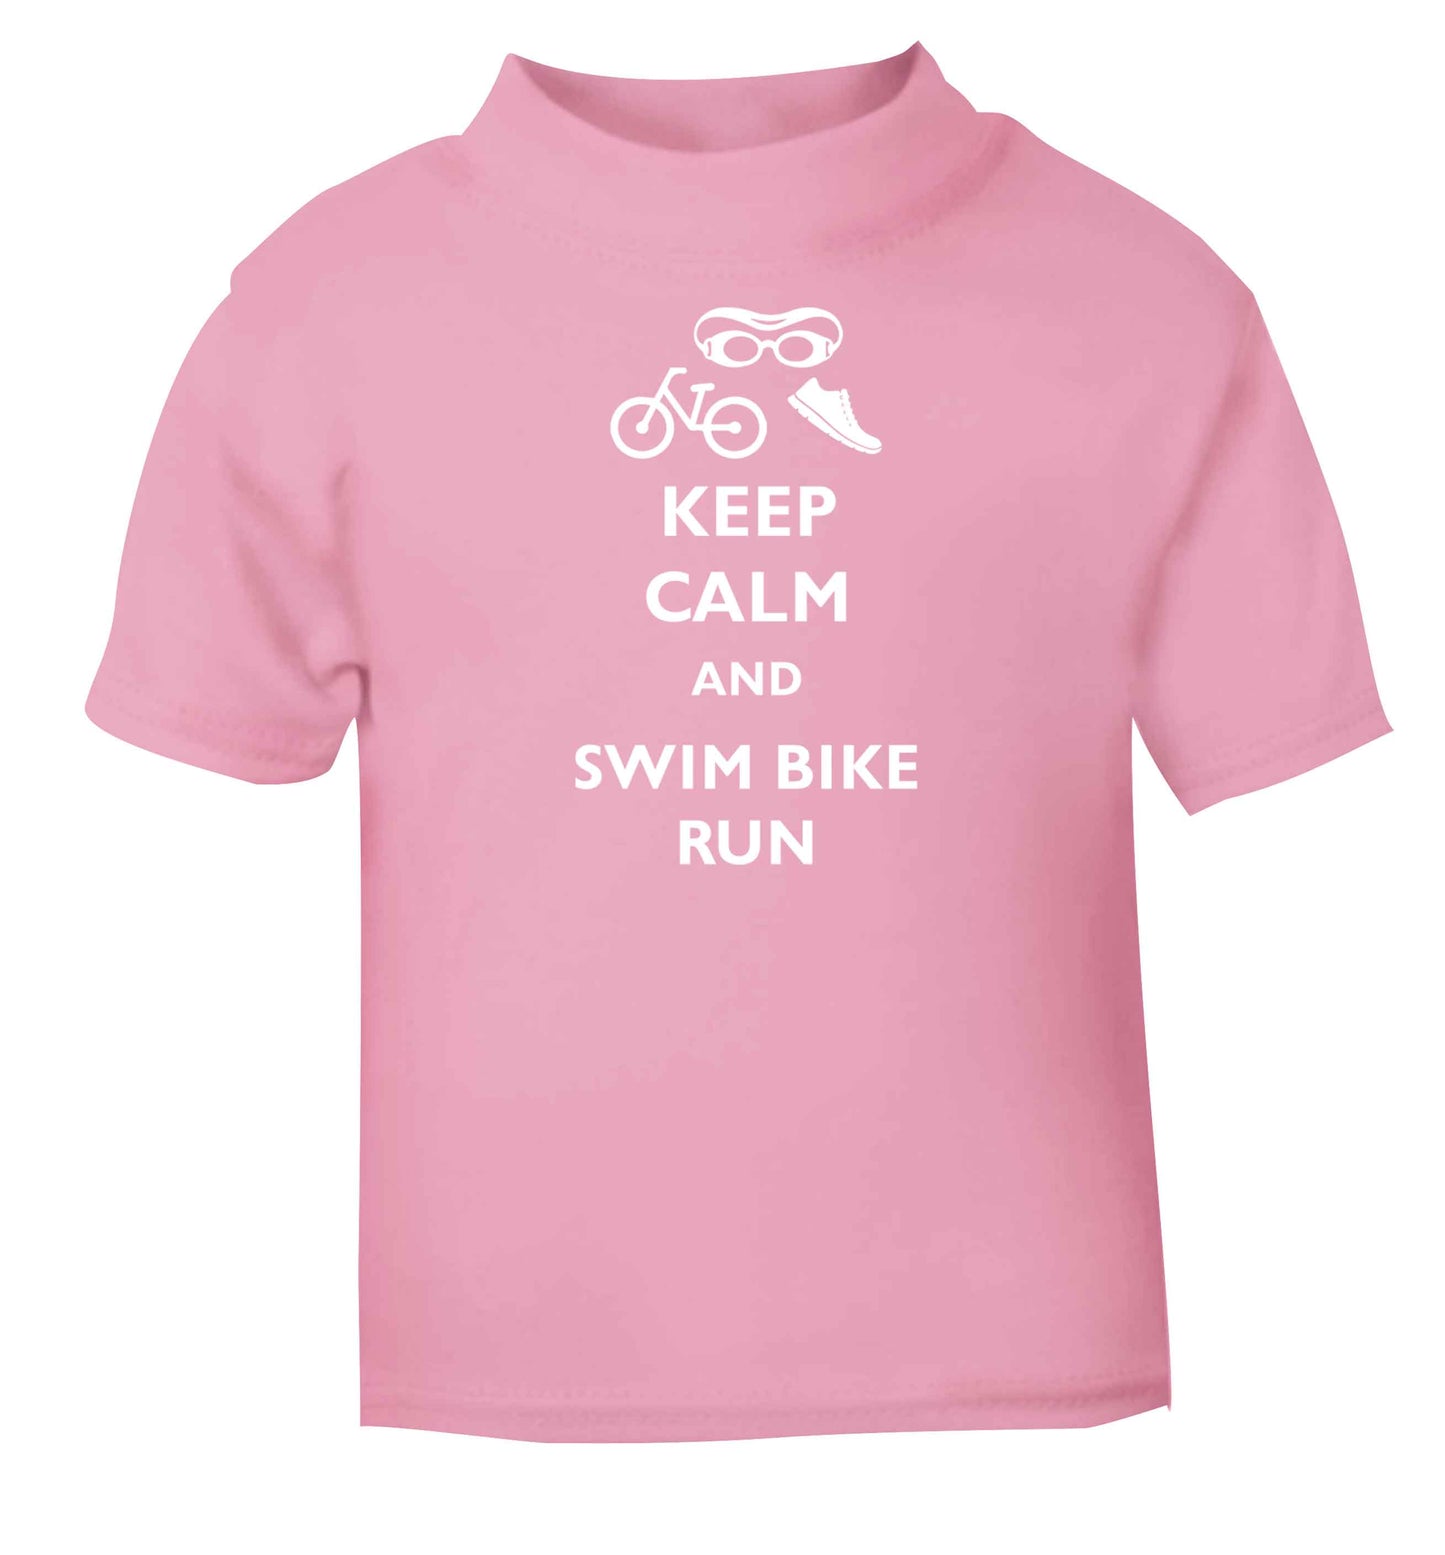 Keep calm and swim bike run light pink baby toddler Tshirt 2 Years